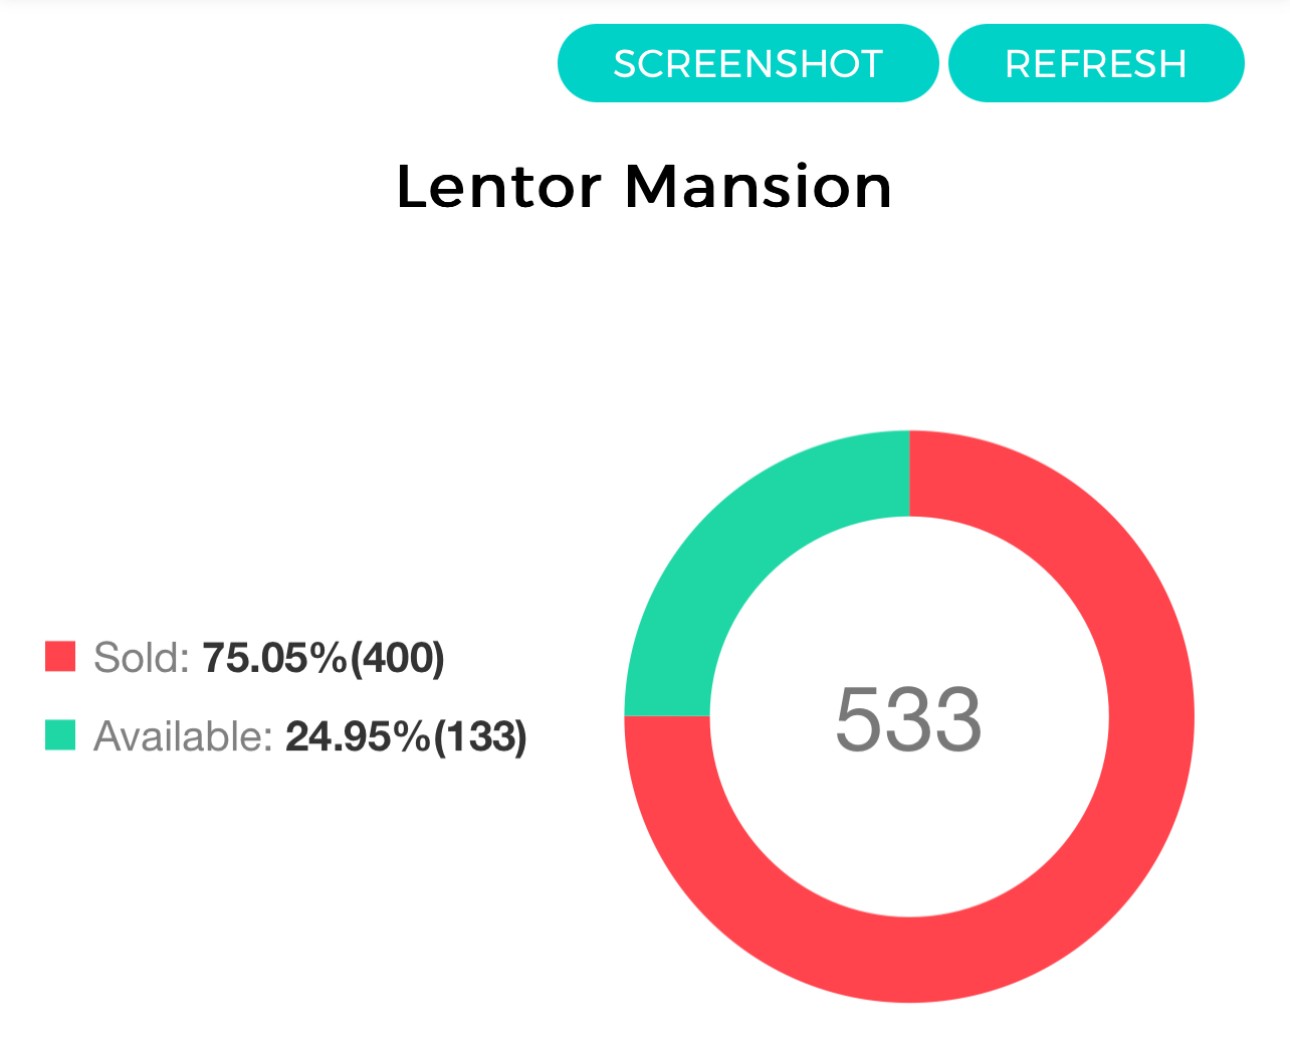 Lentor Mansion Launch Sold 400 Units - Lentor Mansion